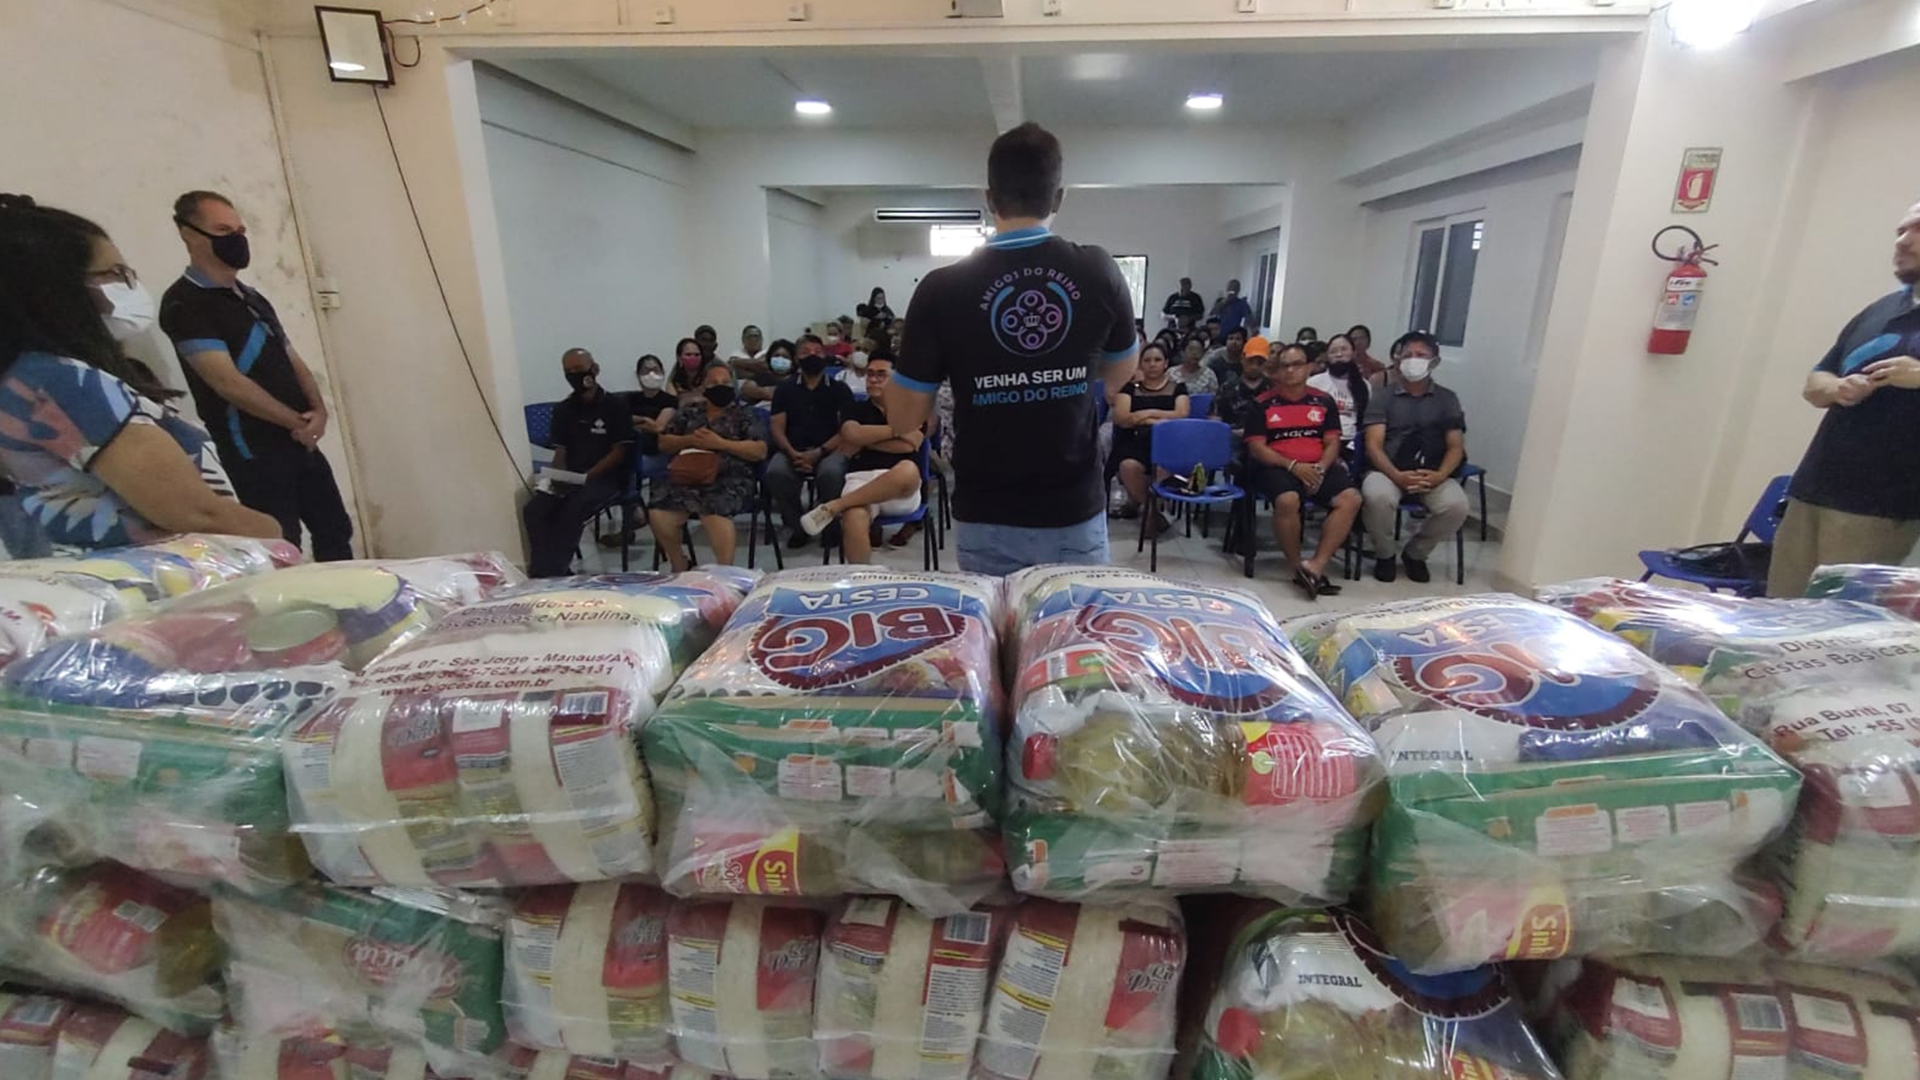 Projeto “Amigos do Reino” entrega cerca de 1 tonelada de alimentos para abrigos e famílias em situação de vulnerabilidade social